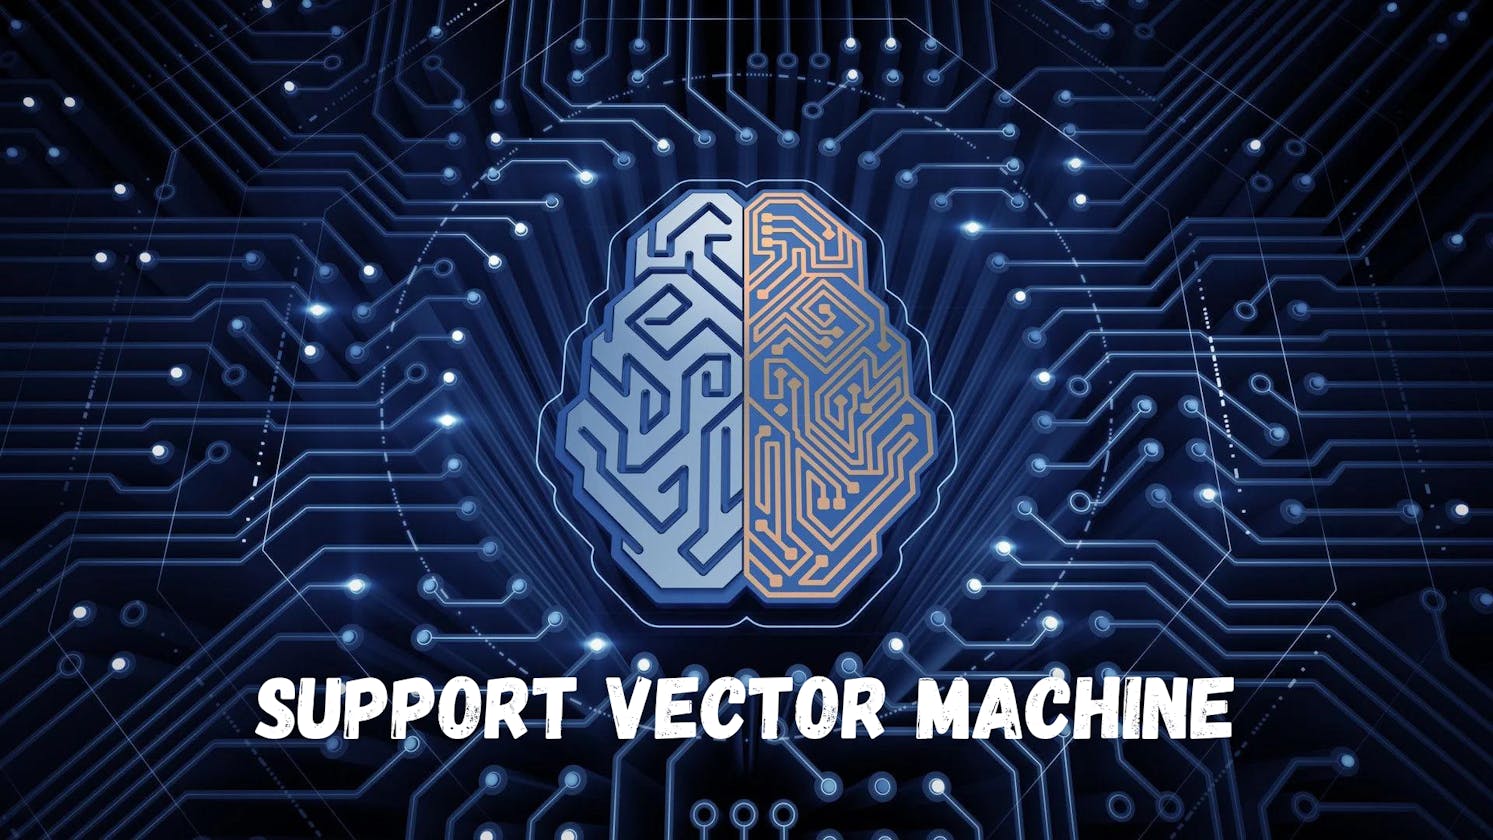 Support Vector Machine(SVM)